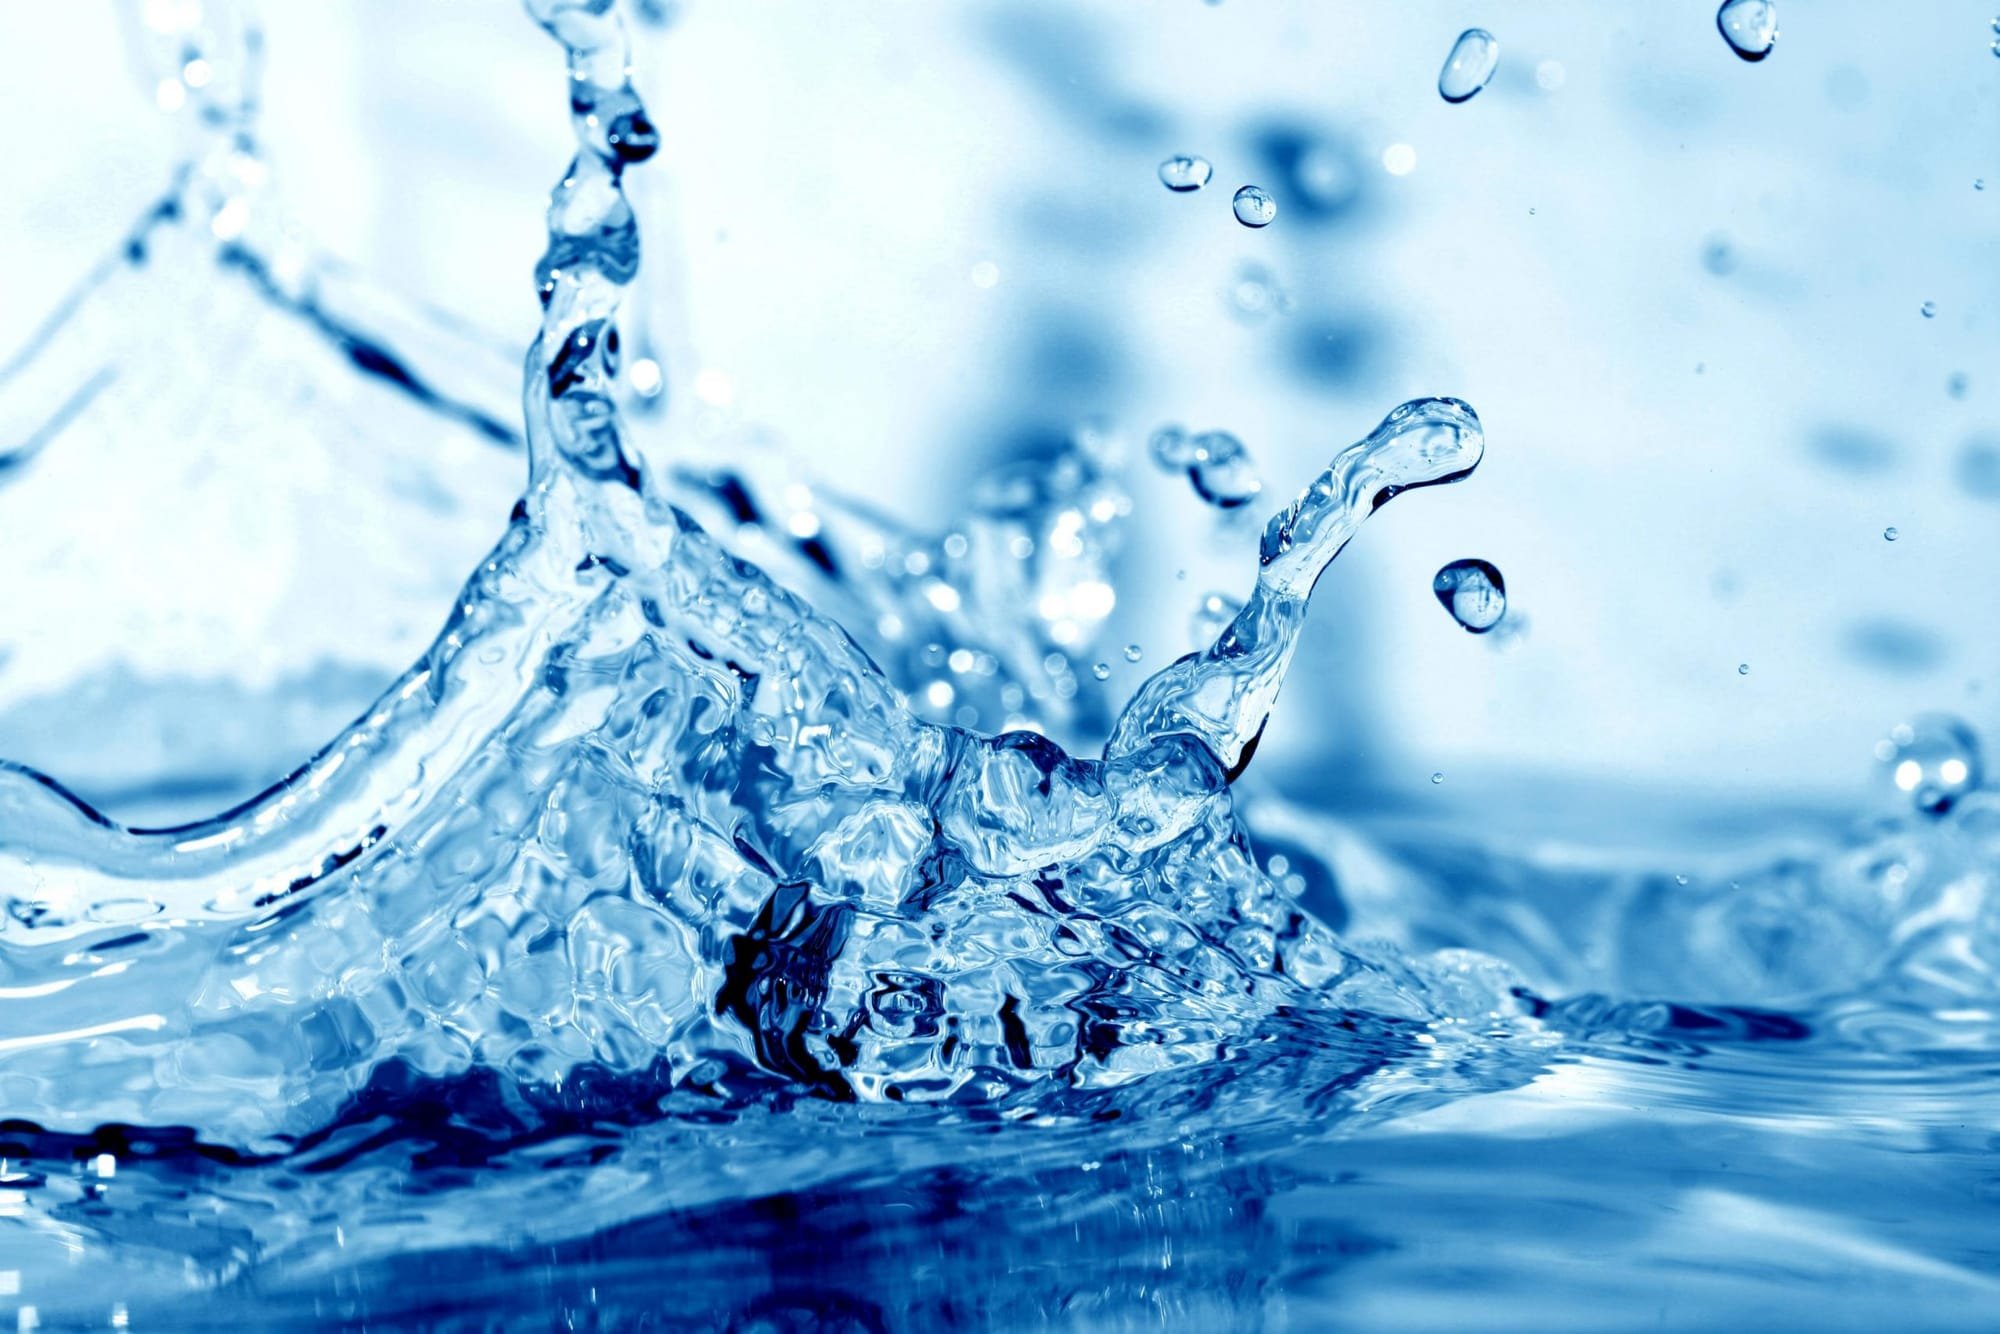 دراسة تكشف فائدة مهمة للماء تتعلق بالصحة